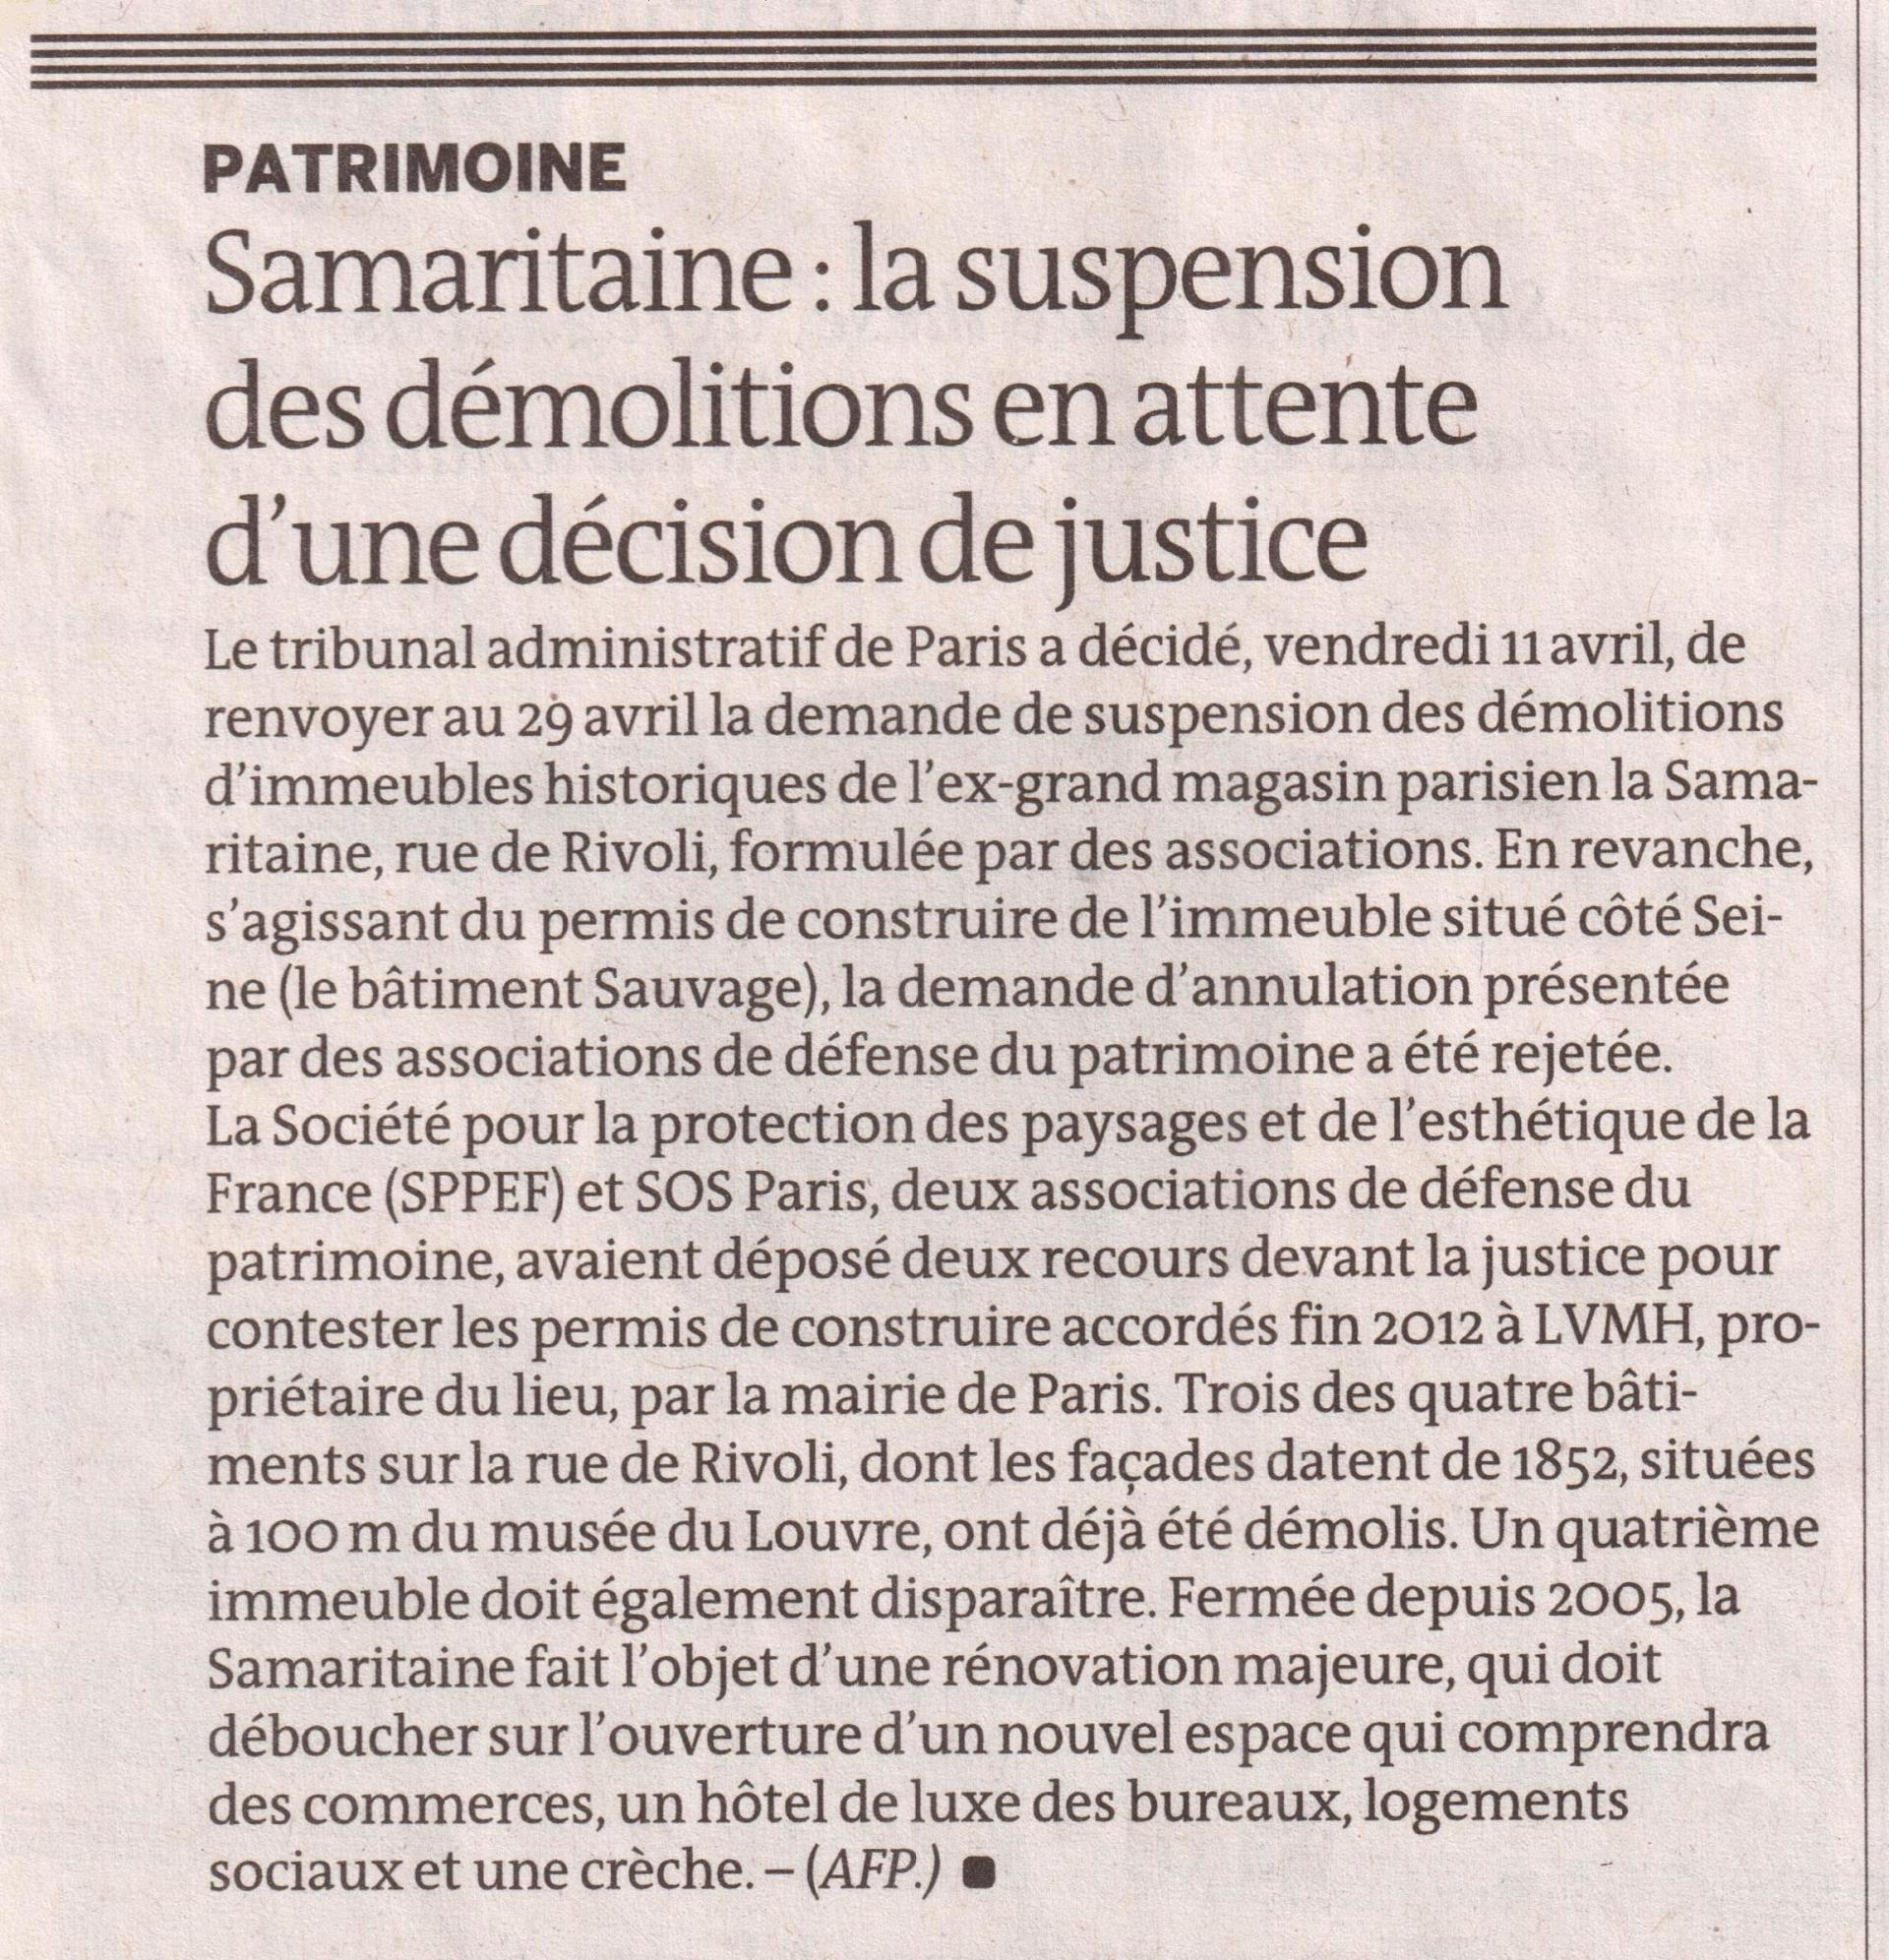 Le Monde du 13-14 avril 2014, p.13